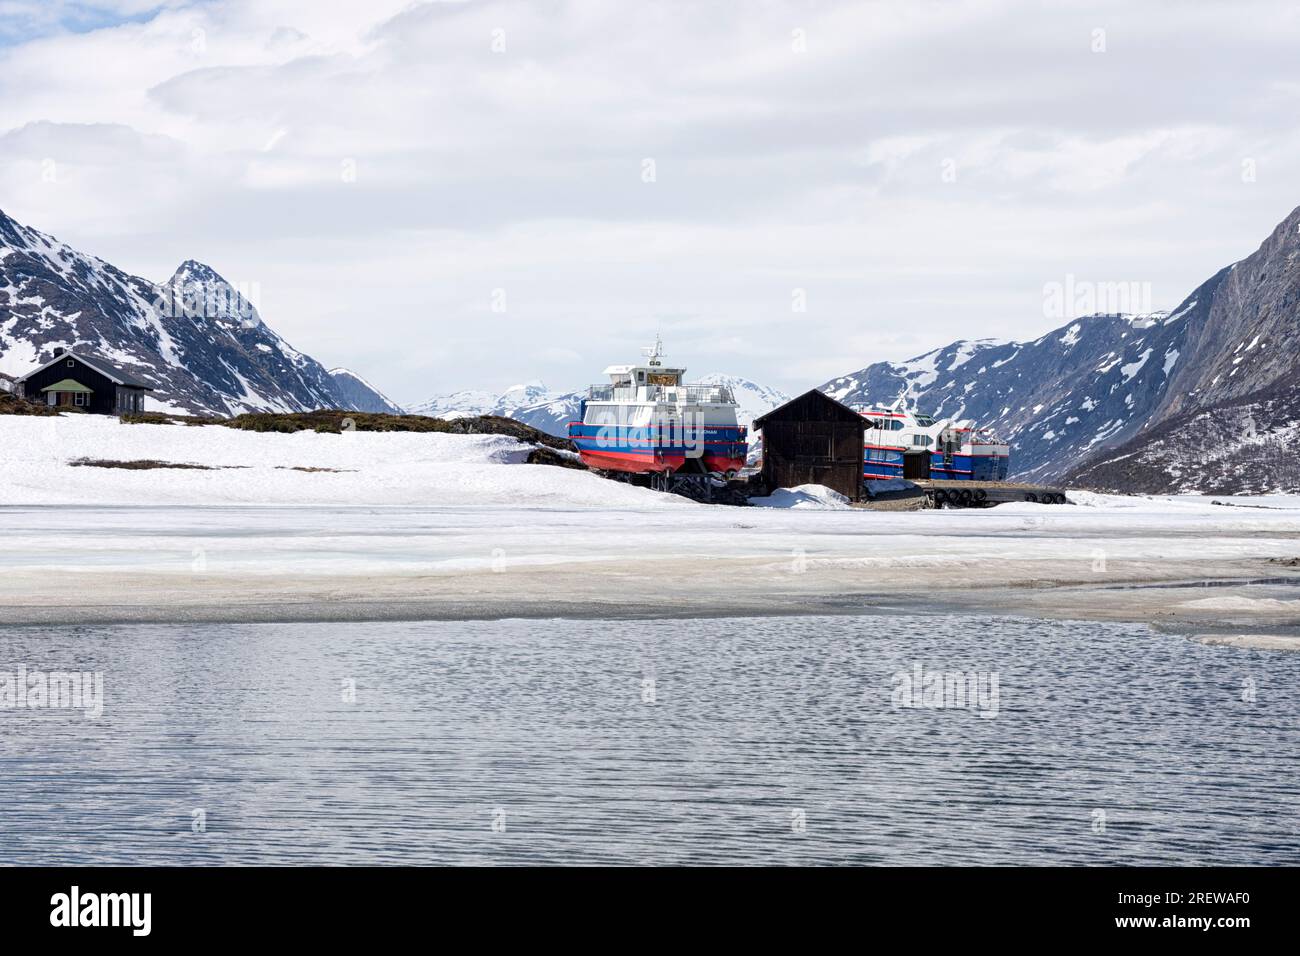 Am östlichen Ende des fast gefrorenen Gjende-Sees in der Nebensaison. Die Ausflugsboote sind noch an Land. Gjendesheim, Gemeinde Vågå, Innlandet, Norwegen Stockfoto